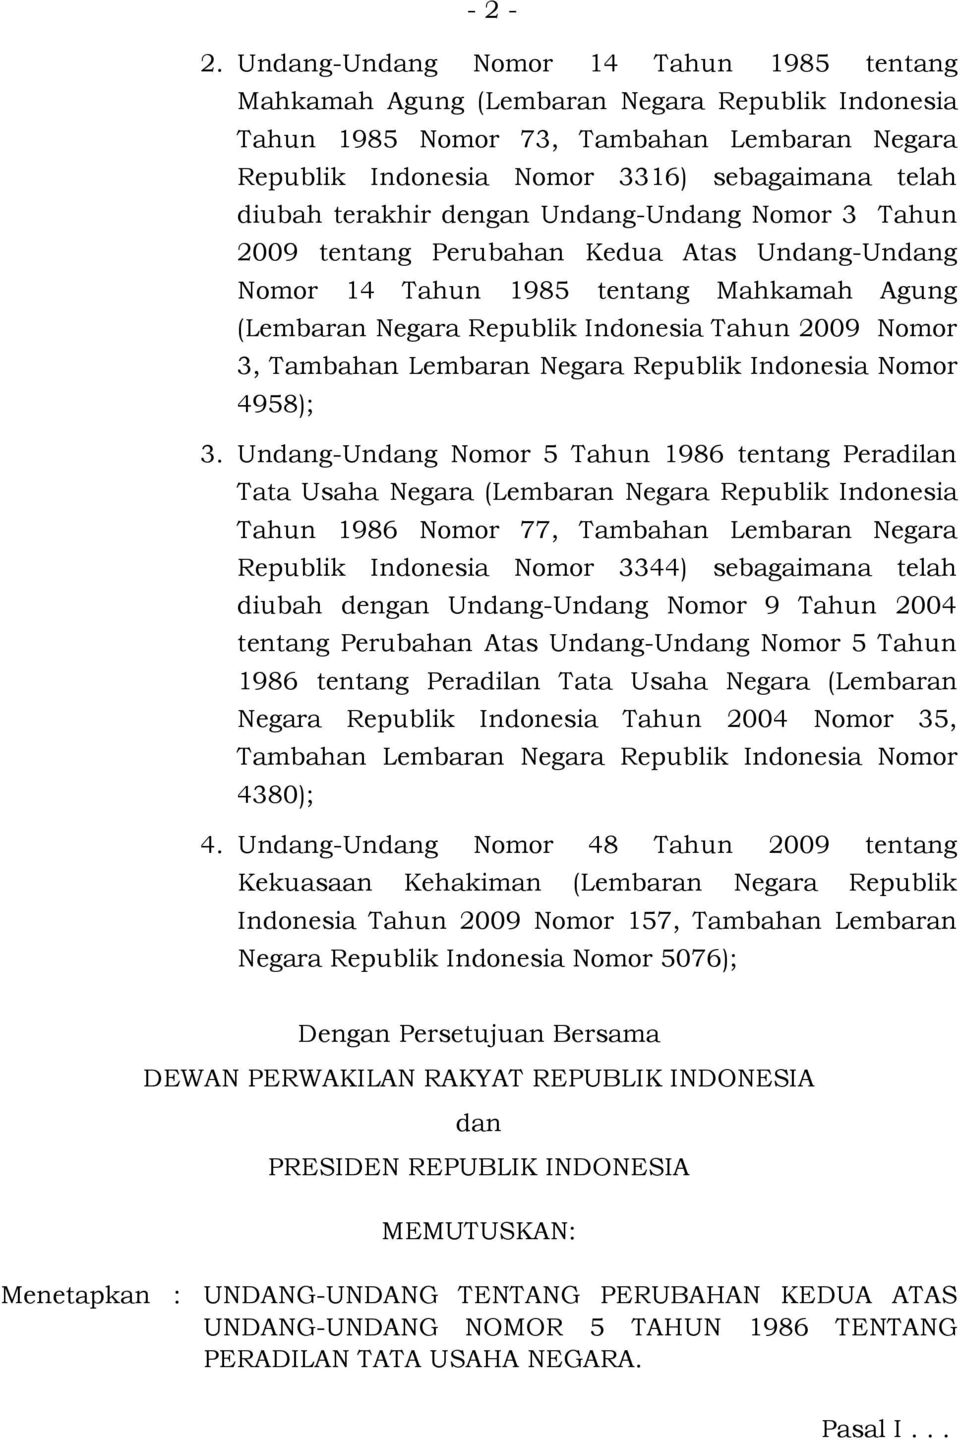 terakhir dengan Undang-Undang Nomor 3 Tahun 2009 tentang Perubahan Kedua Atas Undang-Undang Nomor 14 Tahun 1985 tentang Mahkamah Agung (Lembaran Negara Republik Indonesia Tahun 2009 Nomor 3, Tambahan